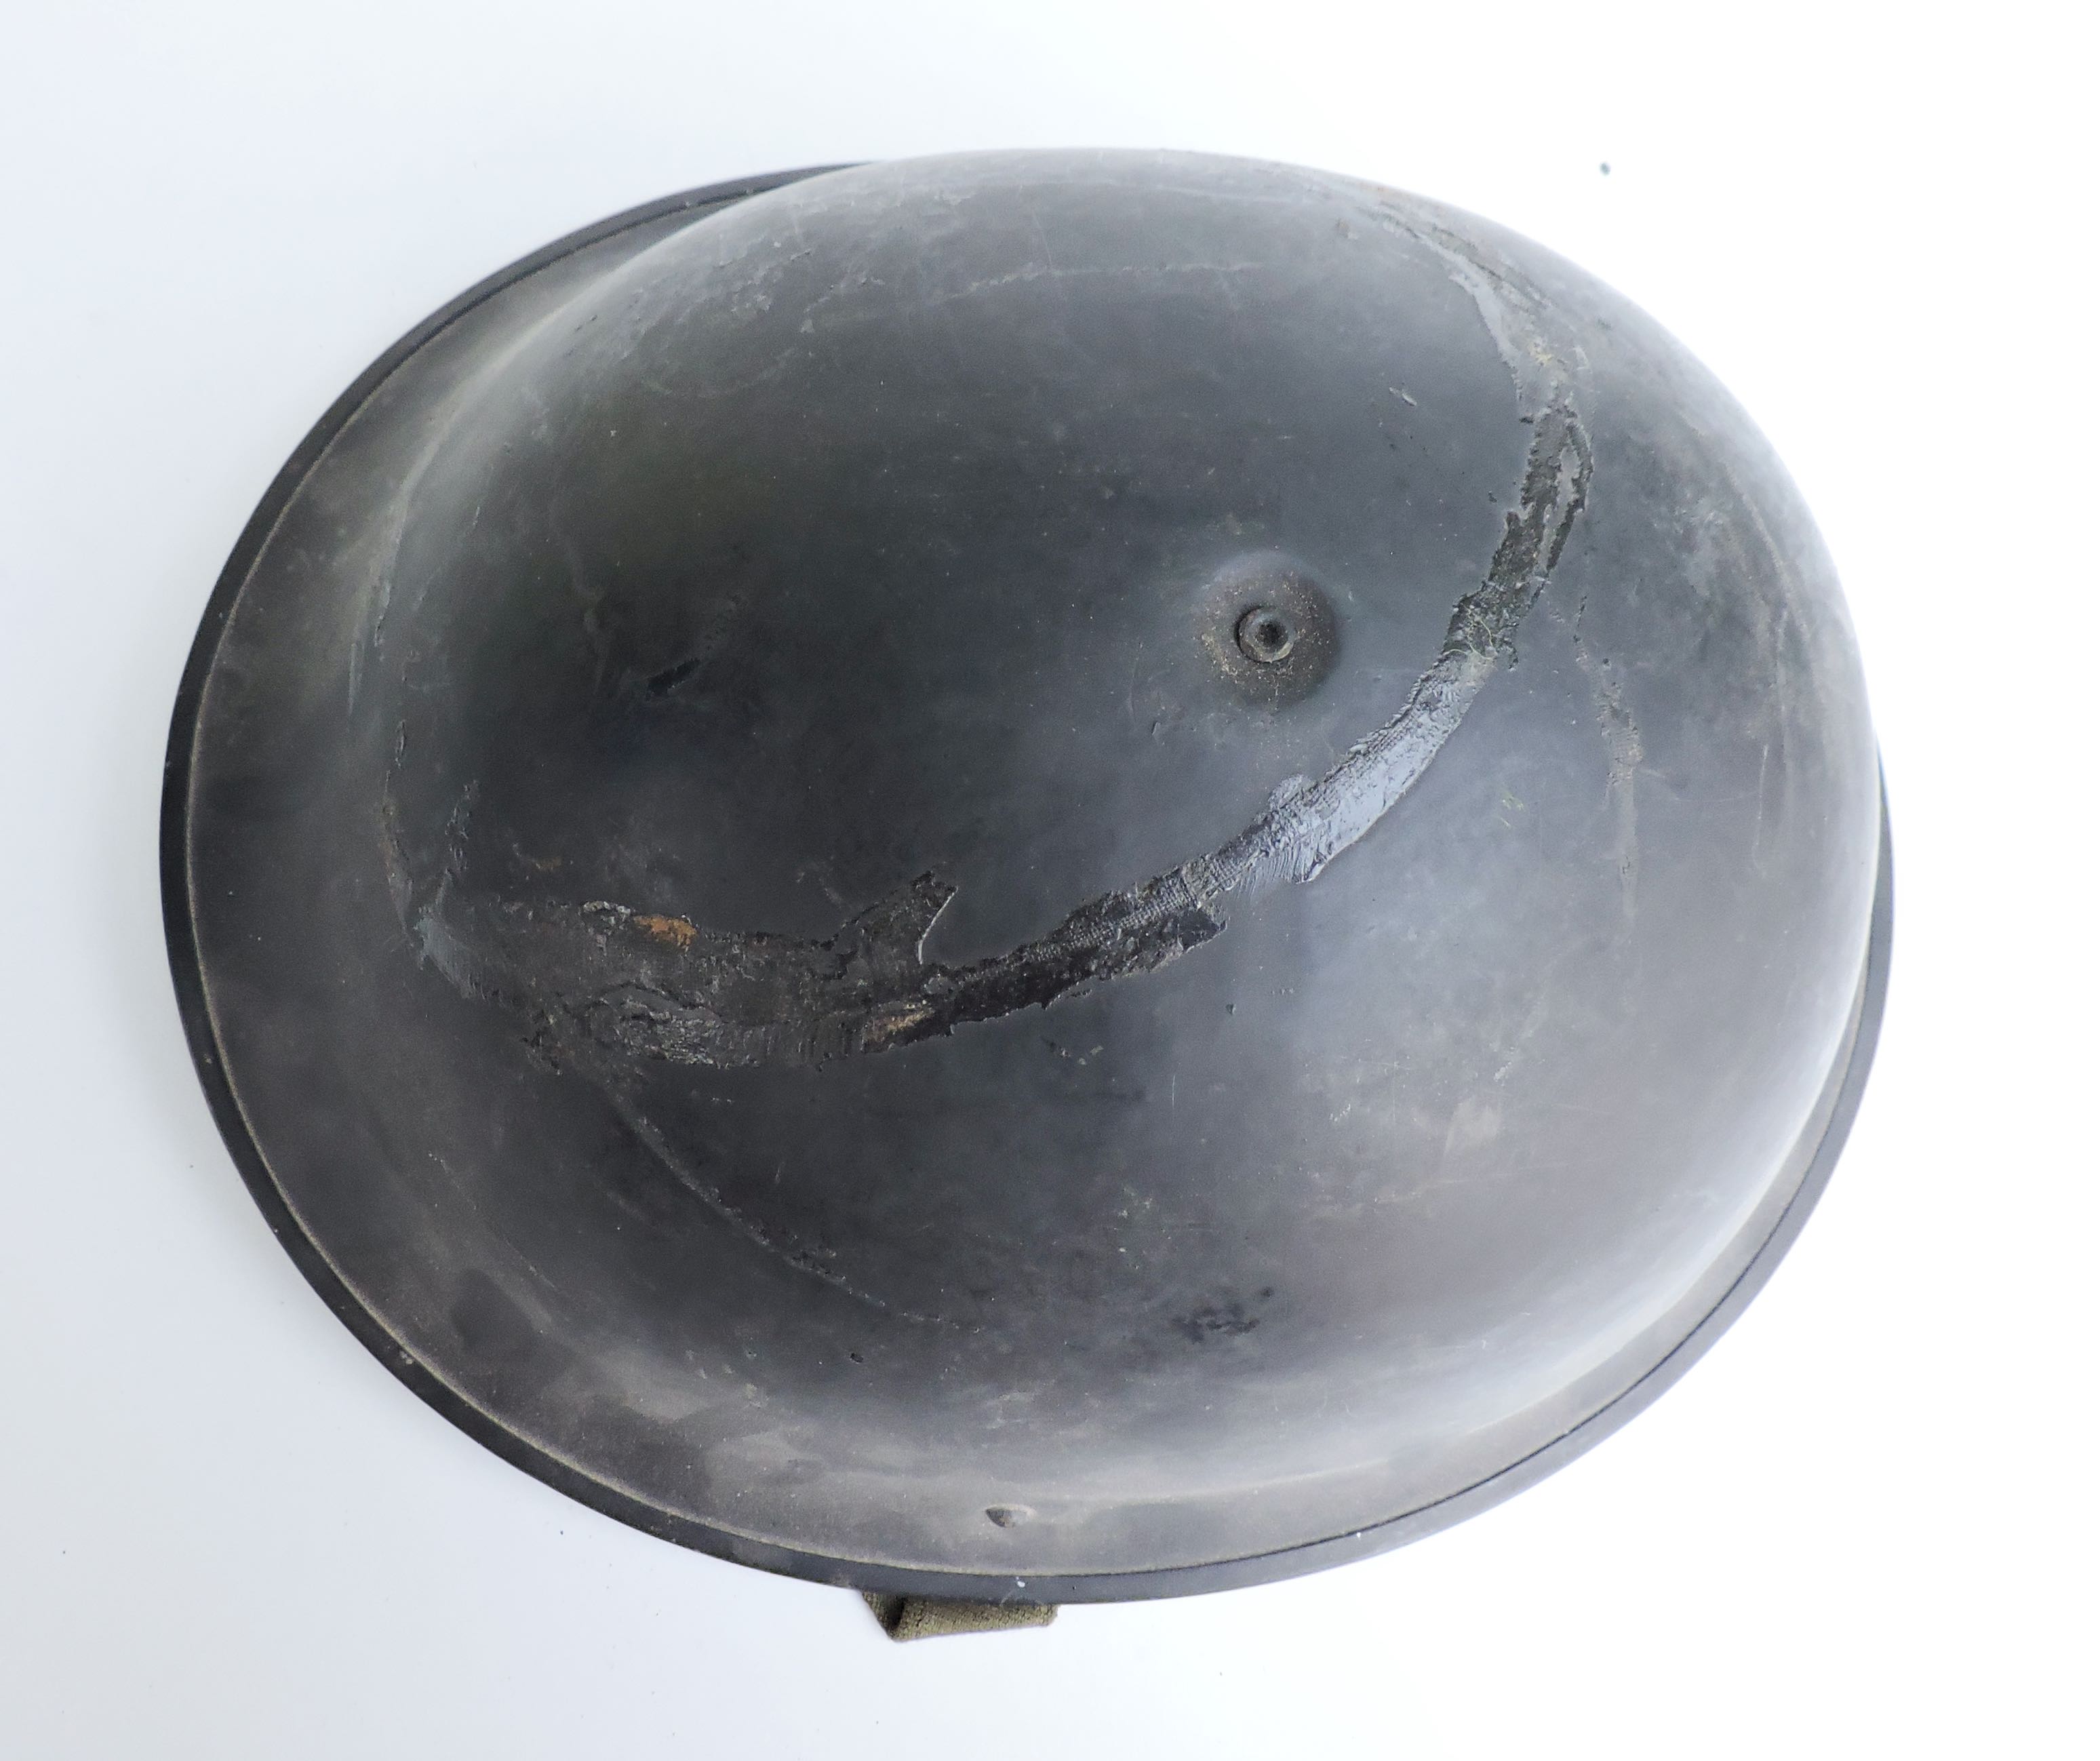 Helmet, Steel, Mark IV  1952. Size 7